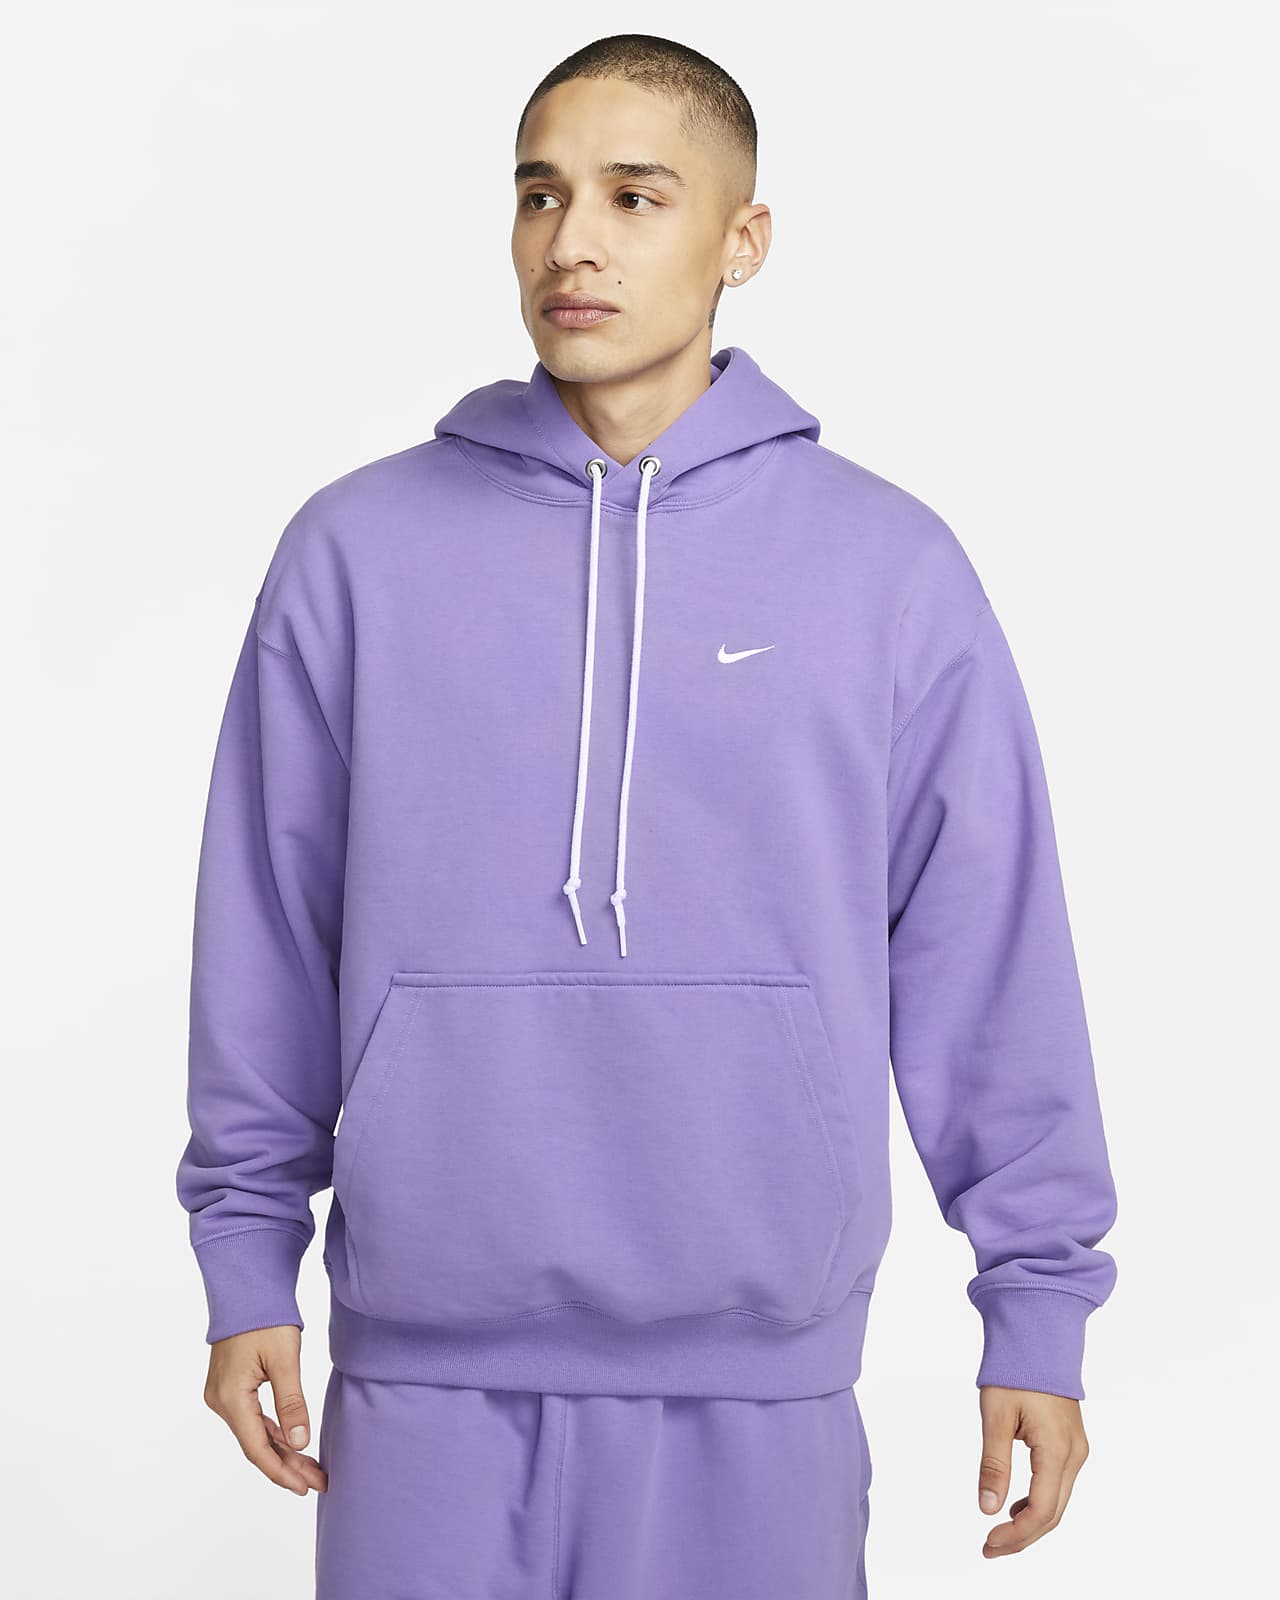 Knorrig Apt medeleerling Nike Solo Swoosh hoodie van sweatstof voor heren. Nike BE